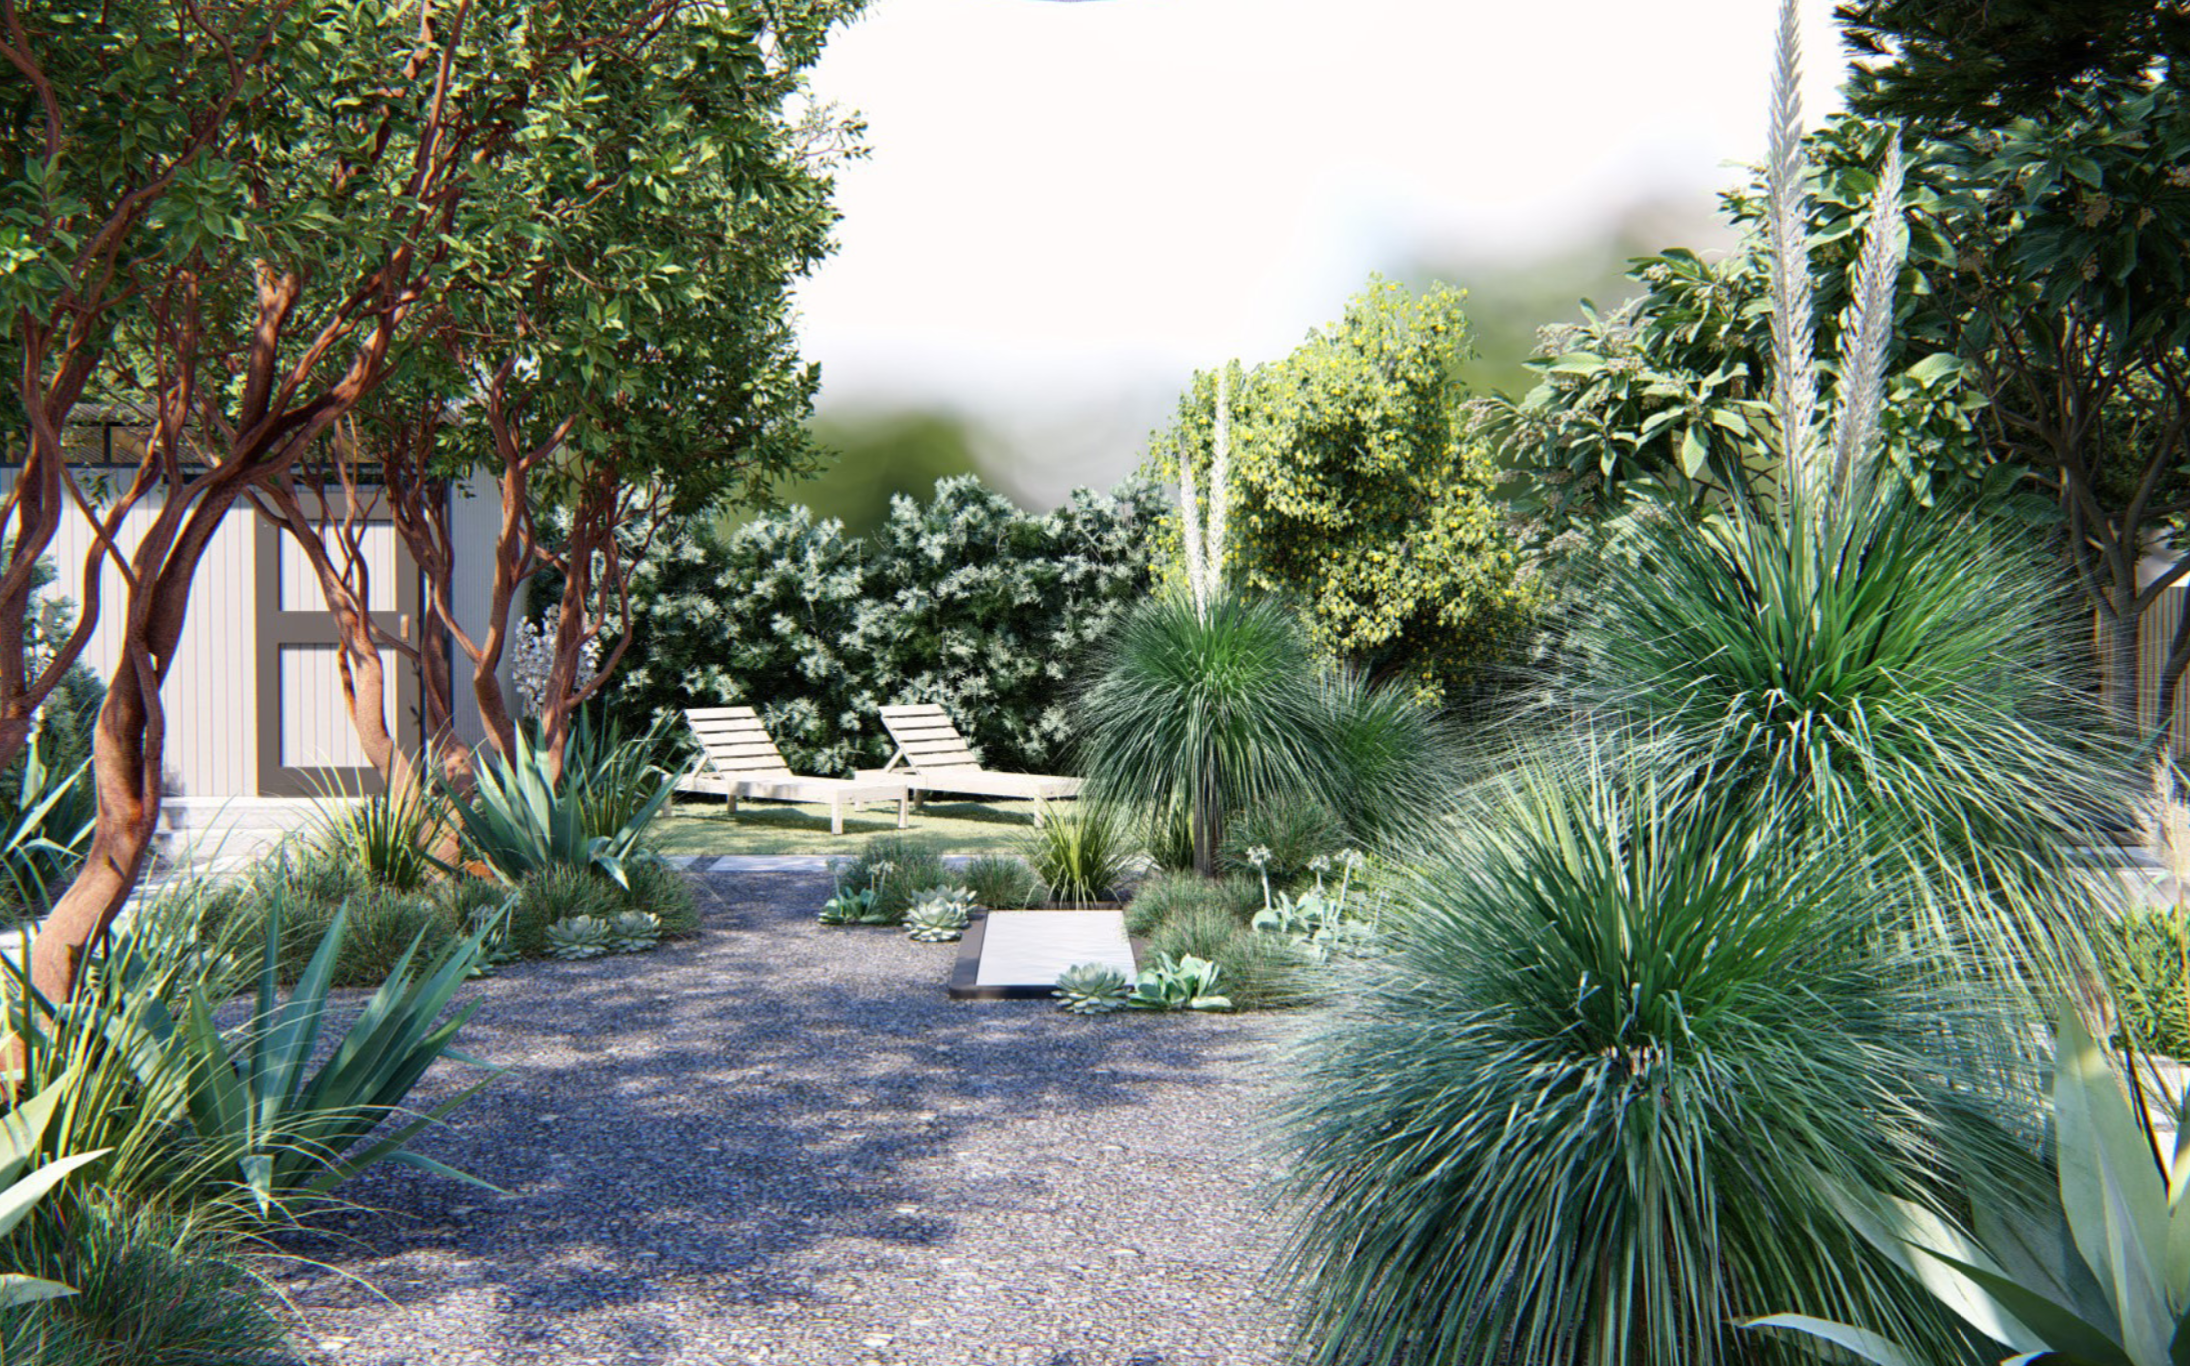 一个简单而美丽的混凝土槽水功能的中心后院增加了oasis-like花园的感觉。